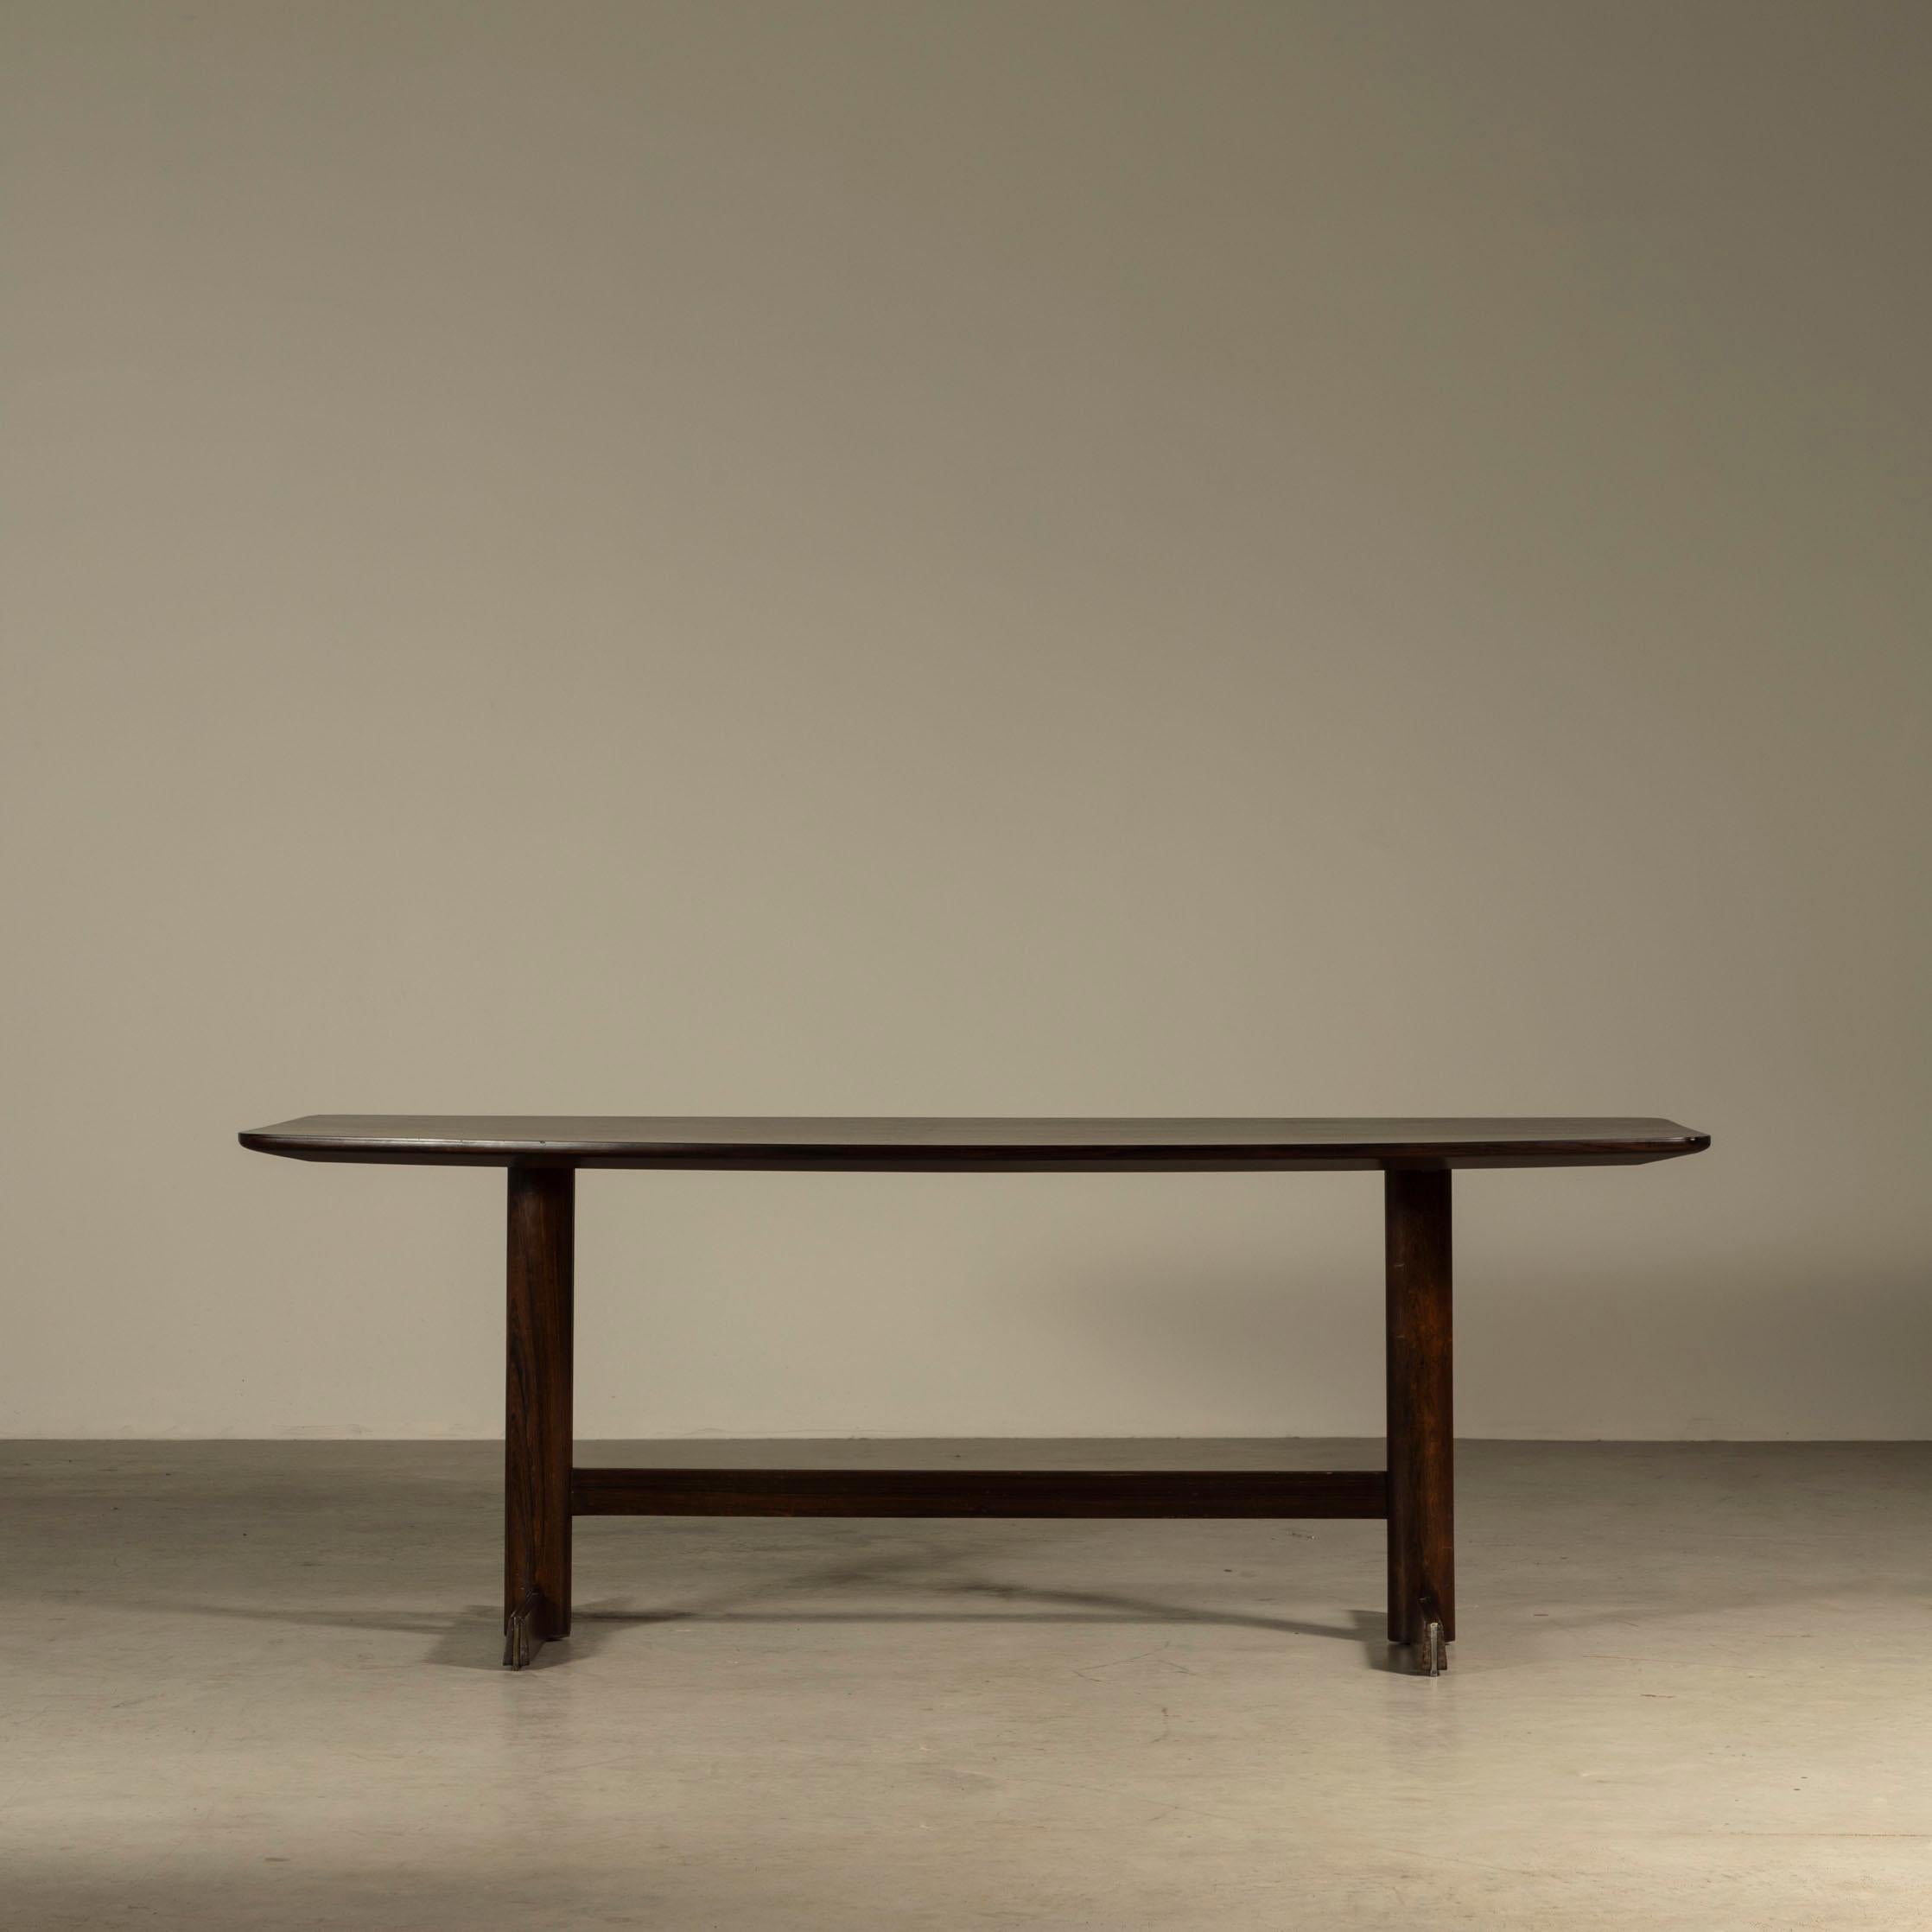 Chef-d'œuvre du design moderne brésilien, cette superbe table de salle à manger de L'Atelier incarne l'essence de l'élégance et de la sophistication. Avec le génie de Jorge Zalszupin à sa tête, L'Atelier a conçu une table de salle à manger qui est à